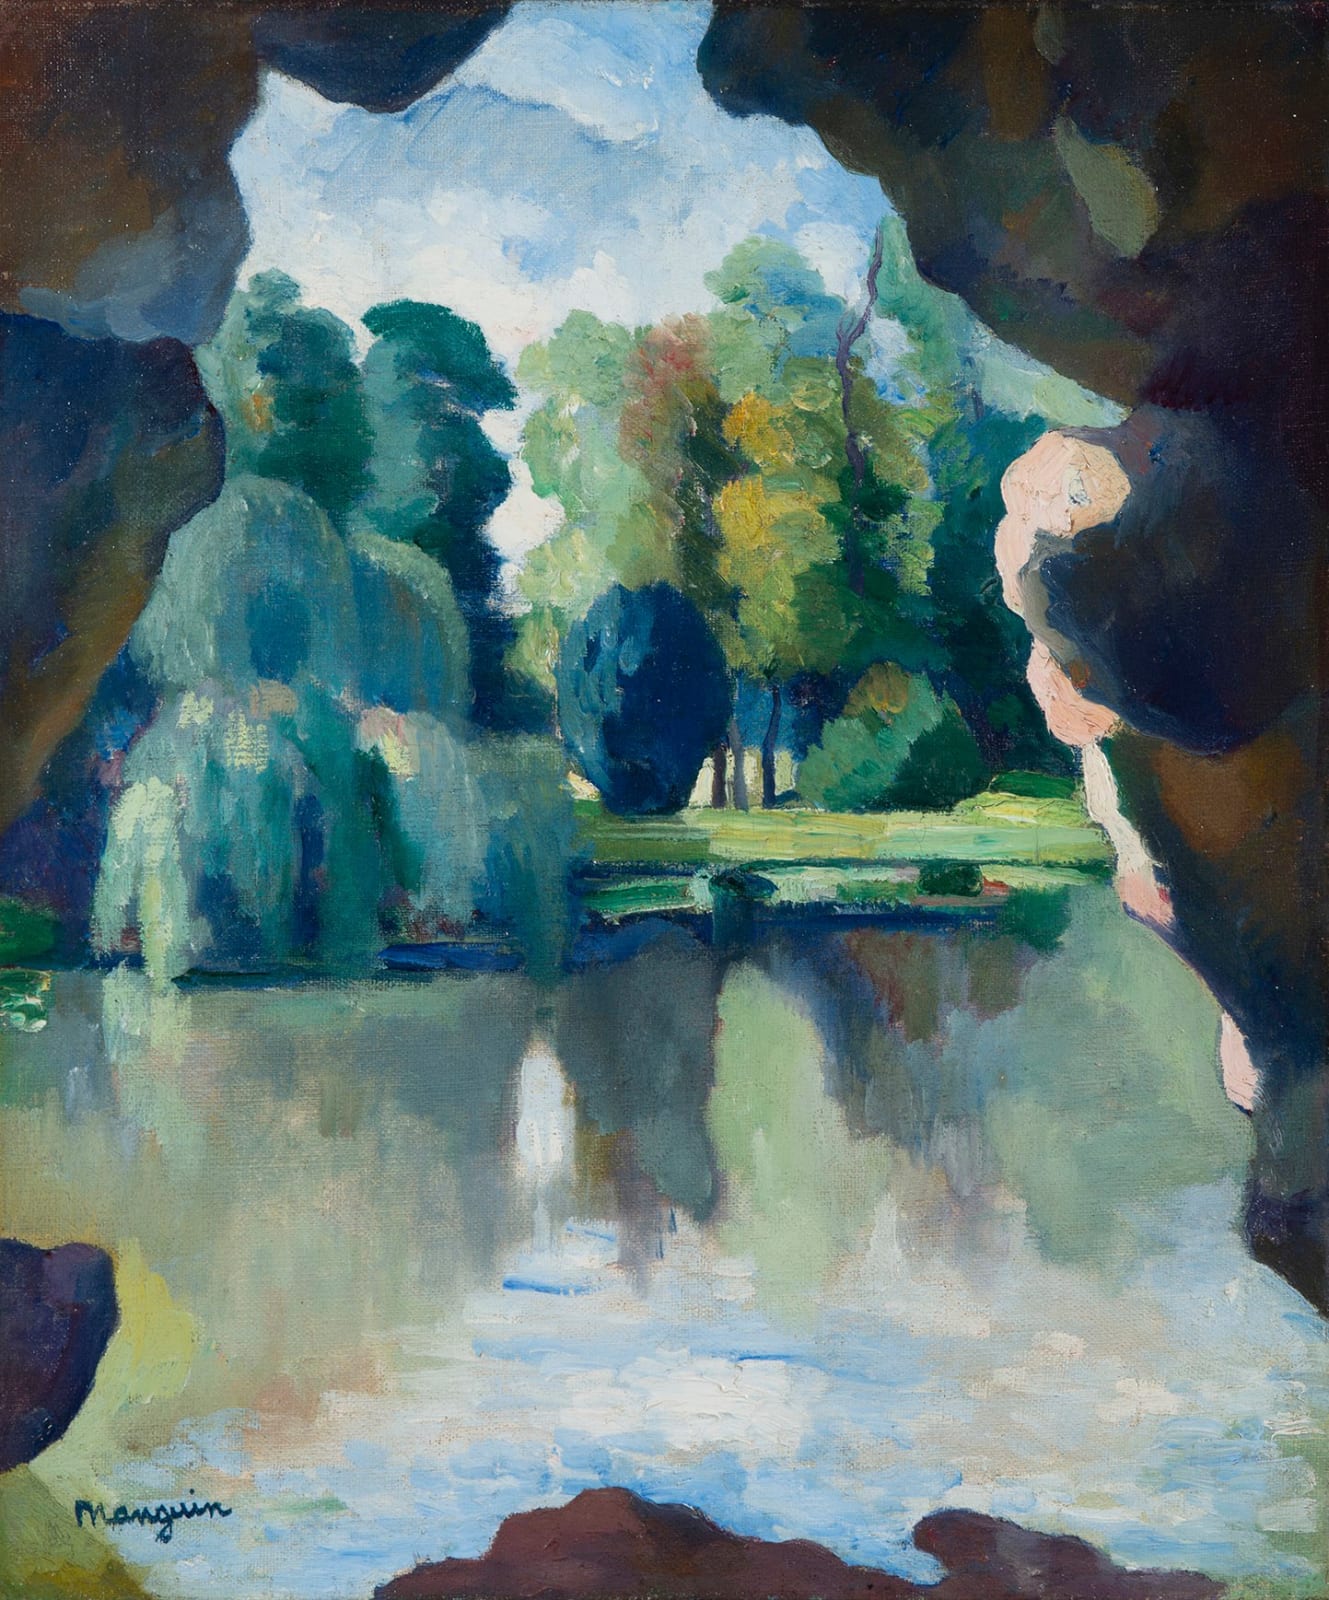 HENRI MANGUIN, Le Lac de Bagatelle, Bois de Boulogne, 1909